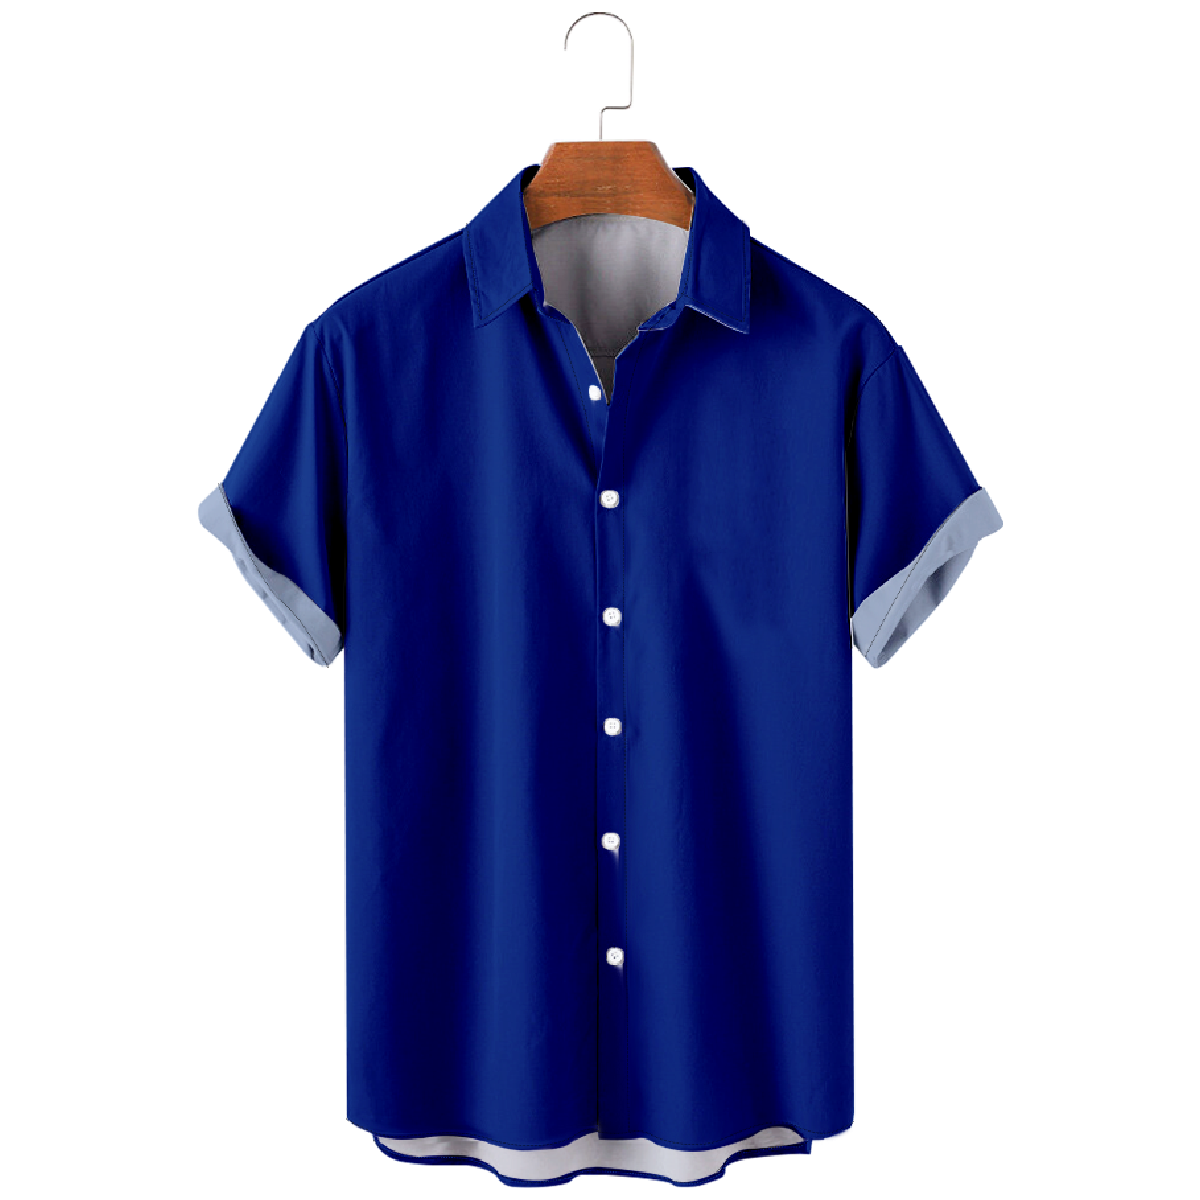 Mens Buffalo Blue Button Up Shirt Short Sleeve Regular Fit Breathable Shirt